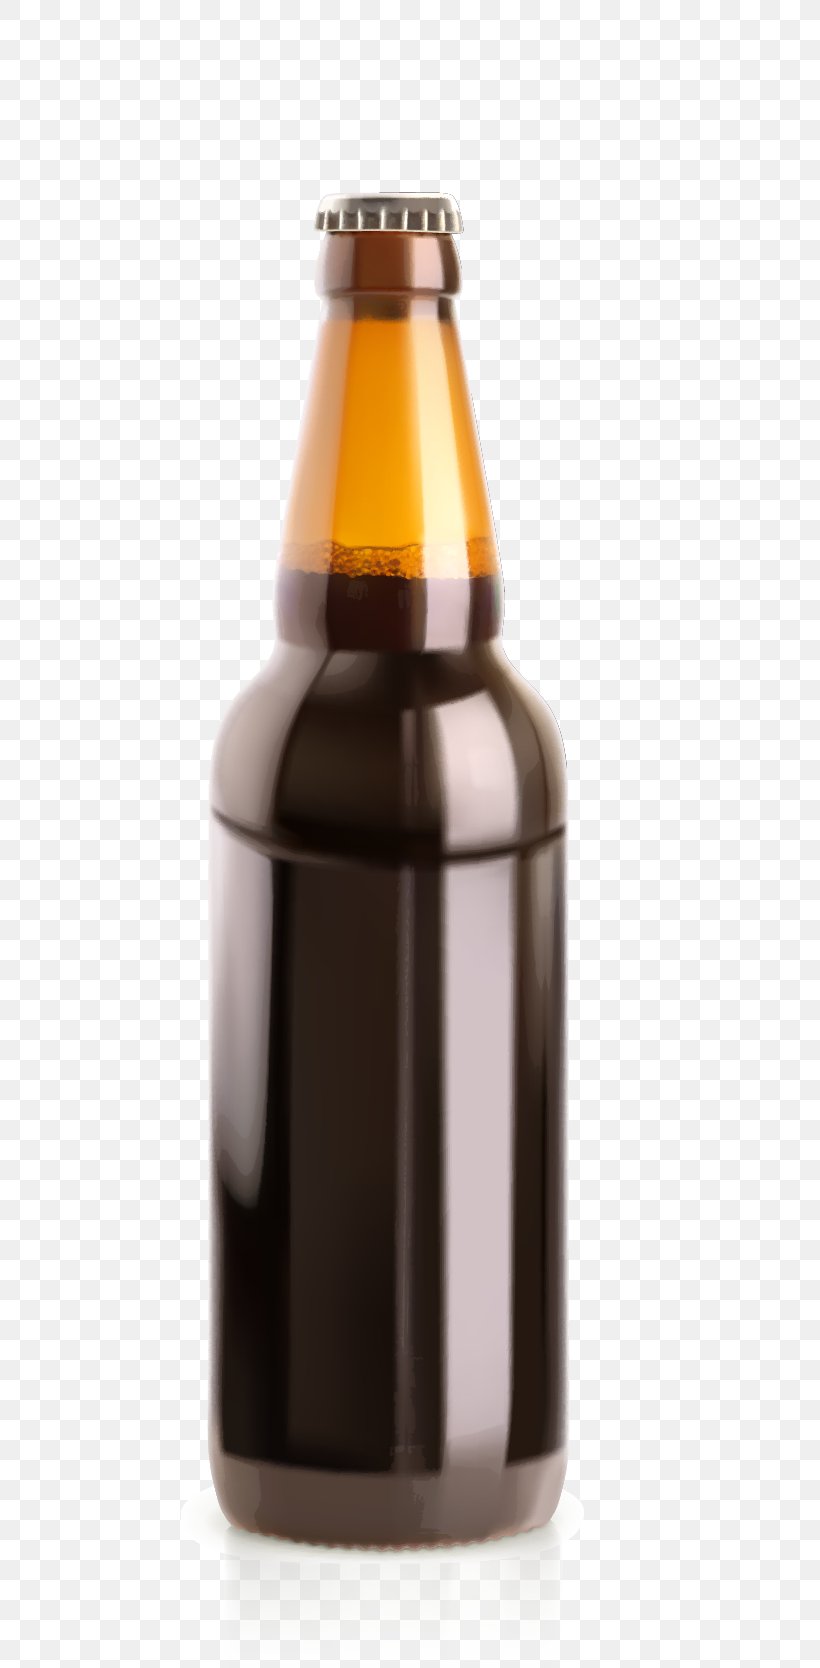 Beer Bottle Glass Illustration, PNG, 631x1668px, Beer, Alcoholic Beverage, Beer Bottle, Beer Glassware, Bottle Download Free